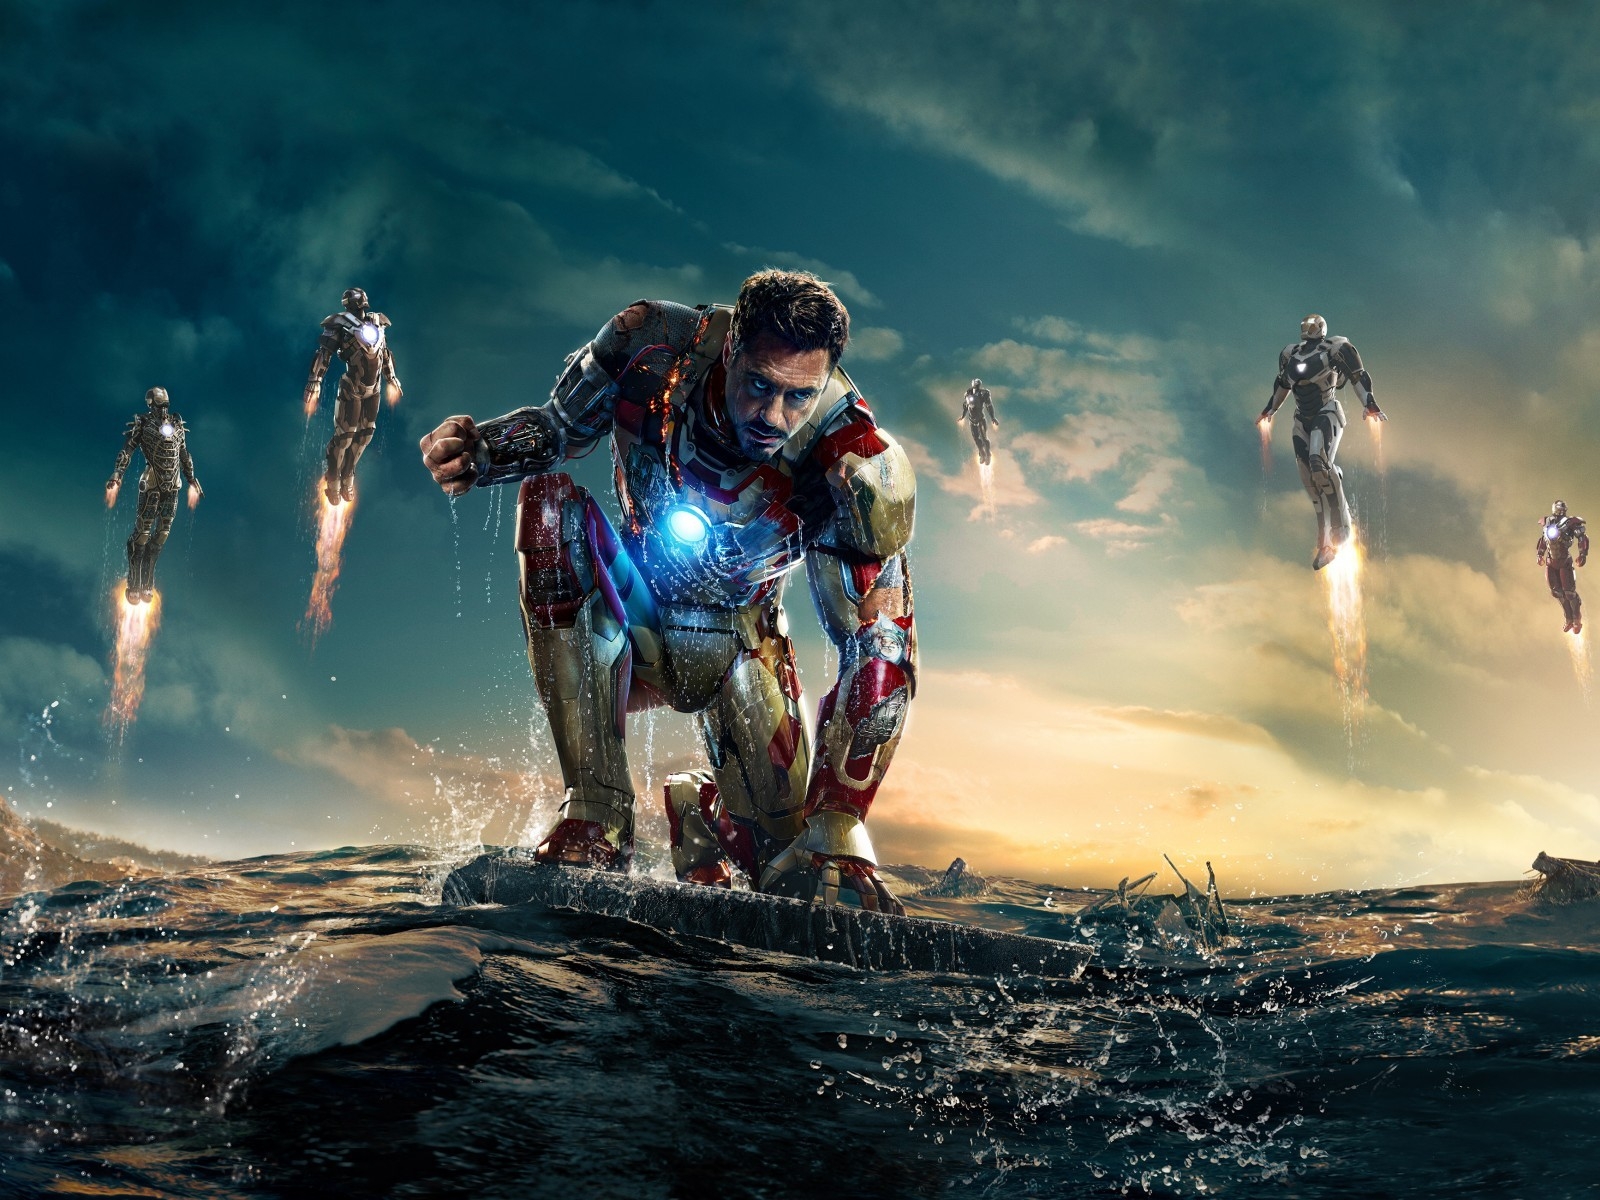 Iron Man 3 Robert Downey Jr for 1600 x 1200 resolution